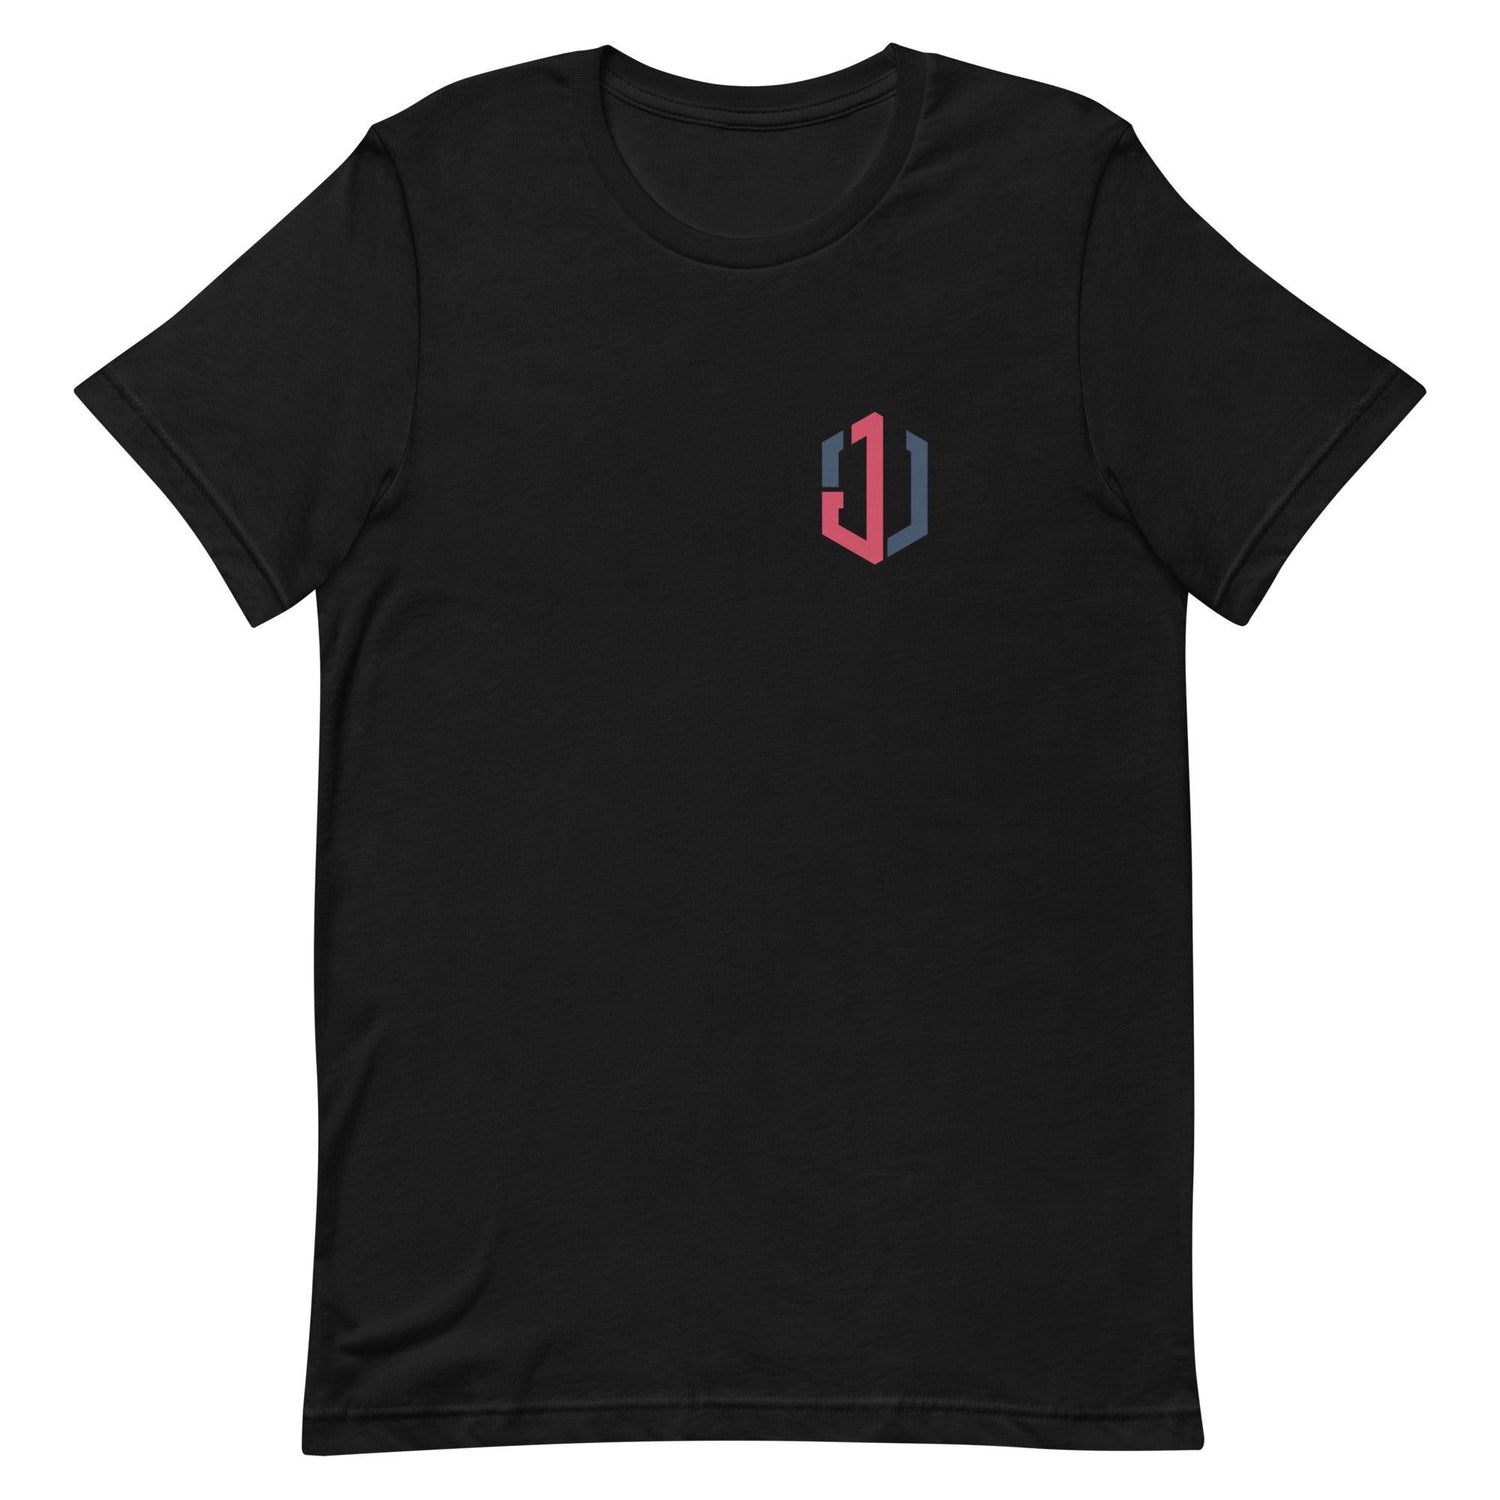 Jordan Walker “JW” t-shirt - Fan Arch